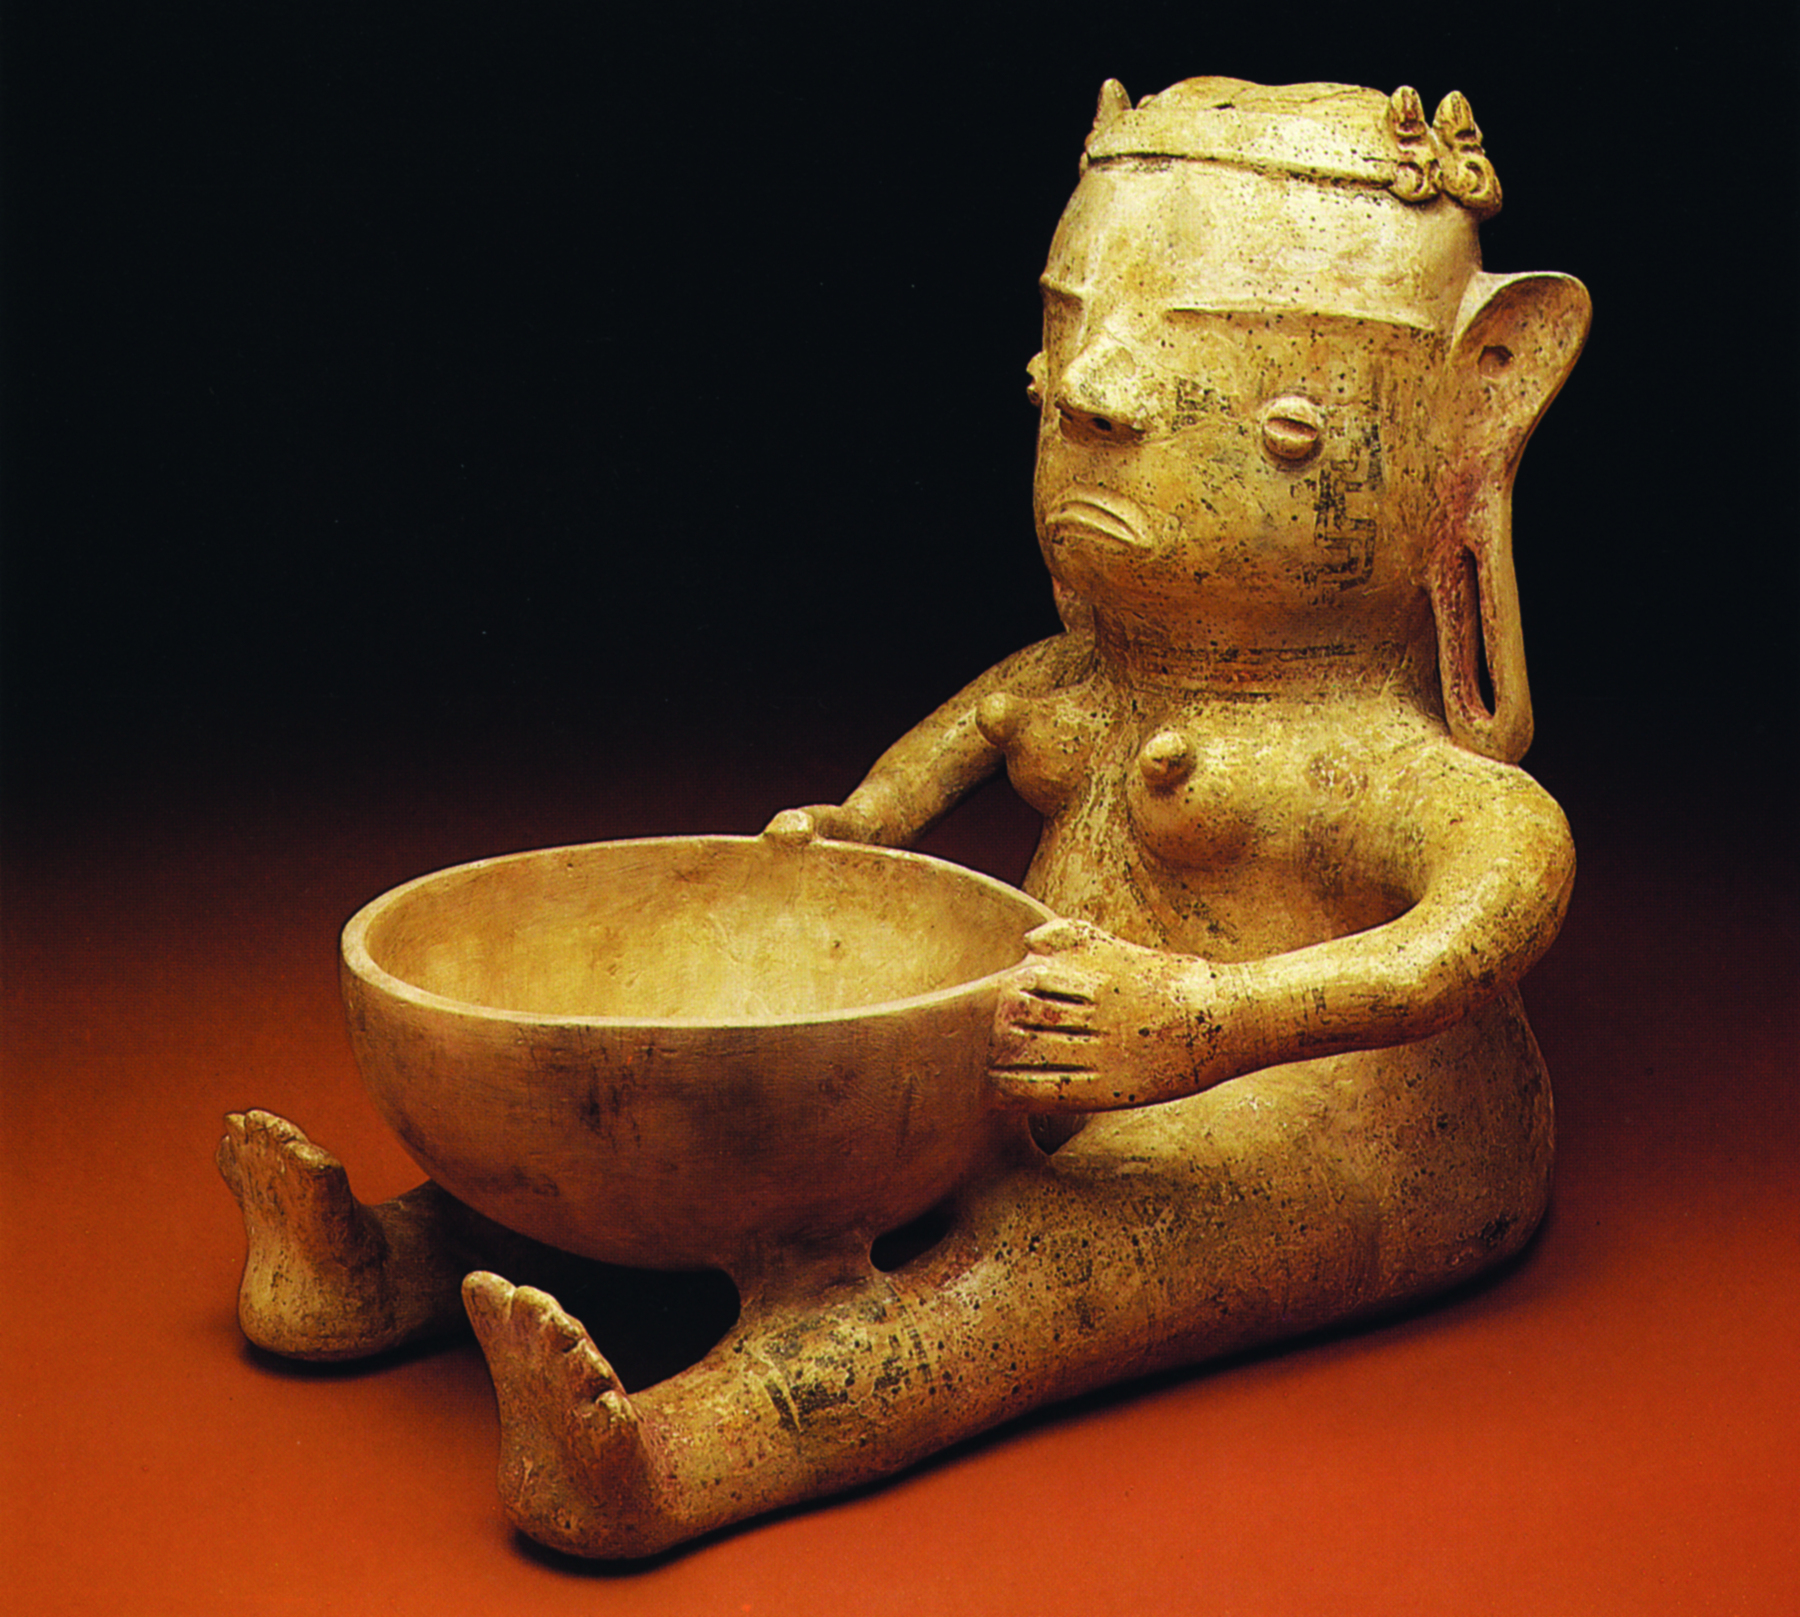 Cerâmica. Escultura de uma figura feminina sentada, com as pernas esticadas e as mãos nas laterais de um recipiente arredondado, apoiado sobre suas pernas.